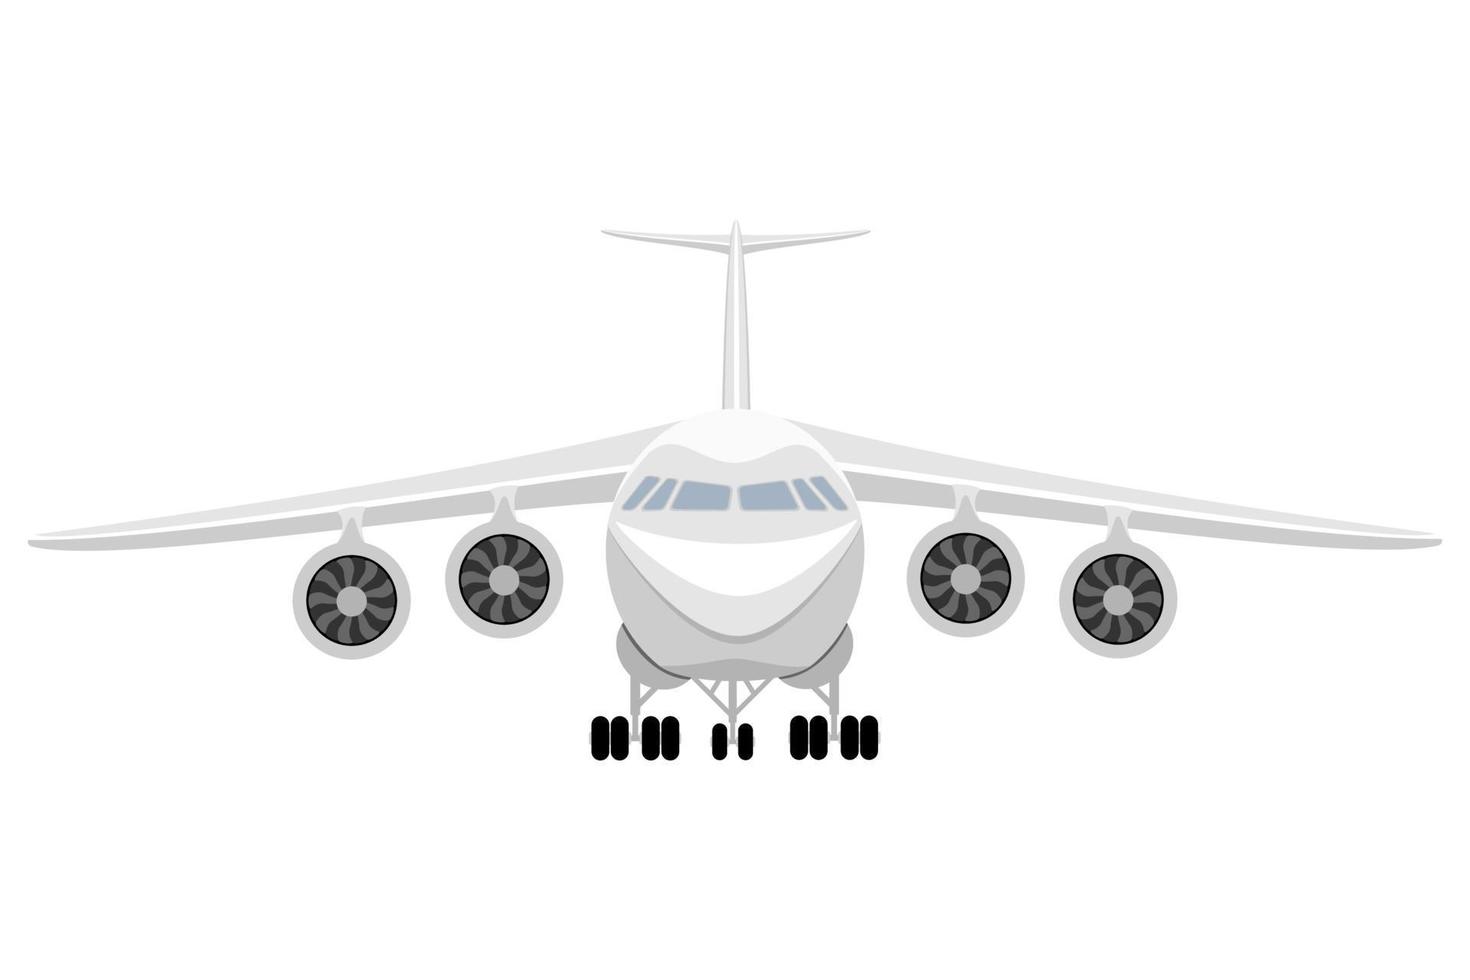 transport för de transport av varor eller passagerare platt ikon vektor illustration isolerat på vit bakgrund